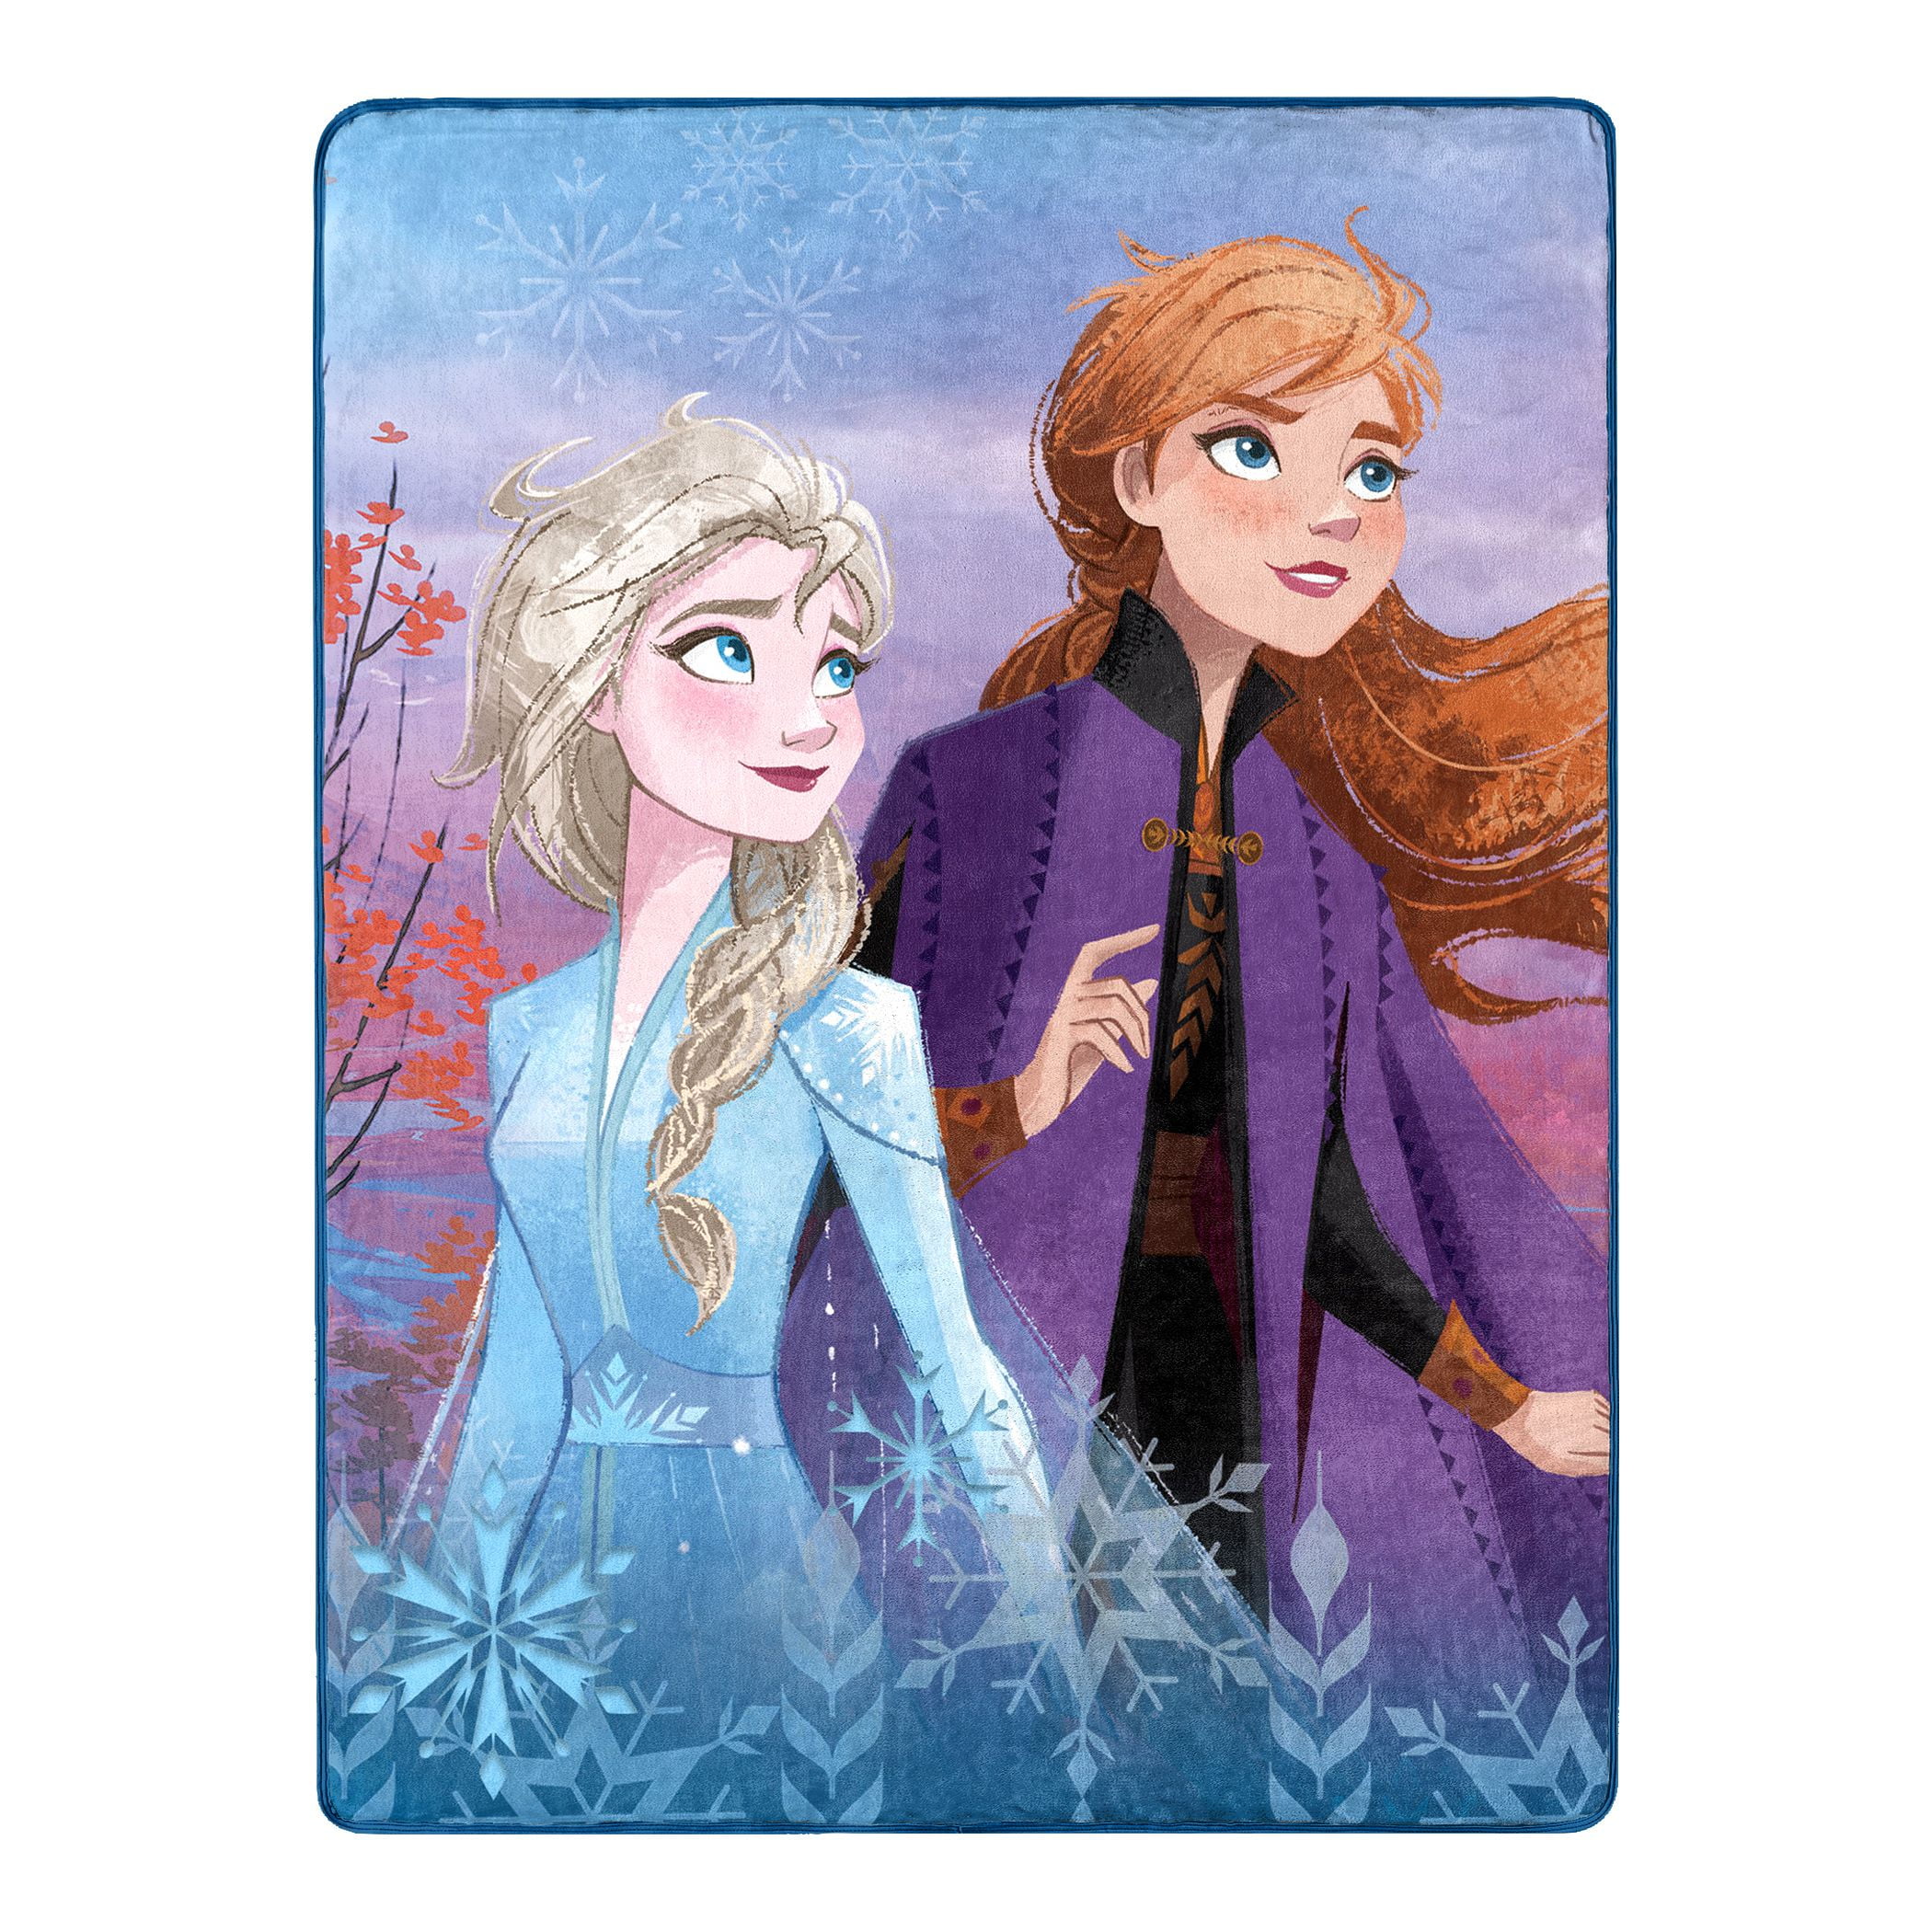 46 X 60 Brand NEW Disney Frozen Kids Warm Super Soft Plush Throw Blanket 